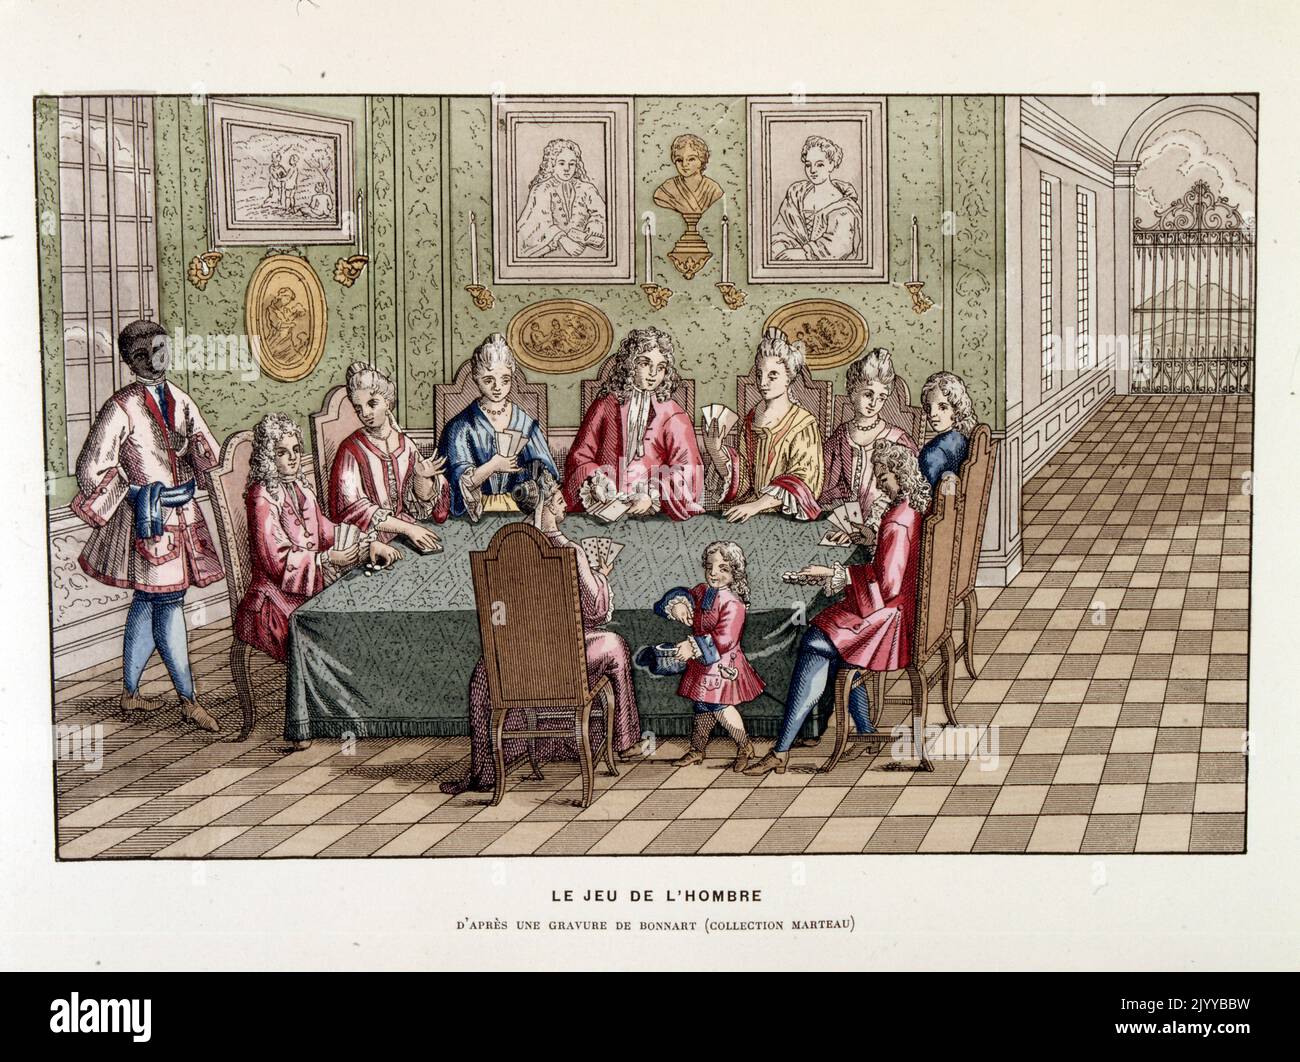 Farbige Abbildung einer Karte eine Gruppe von Menschen um einen Tisch herum, die das Schattenspiel spielen, inspiriert von einem Gemälde von Bonnard. Stockfoto